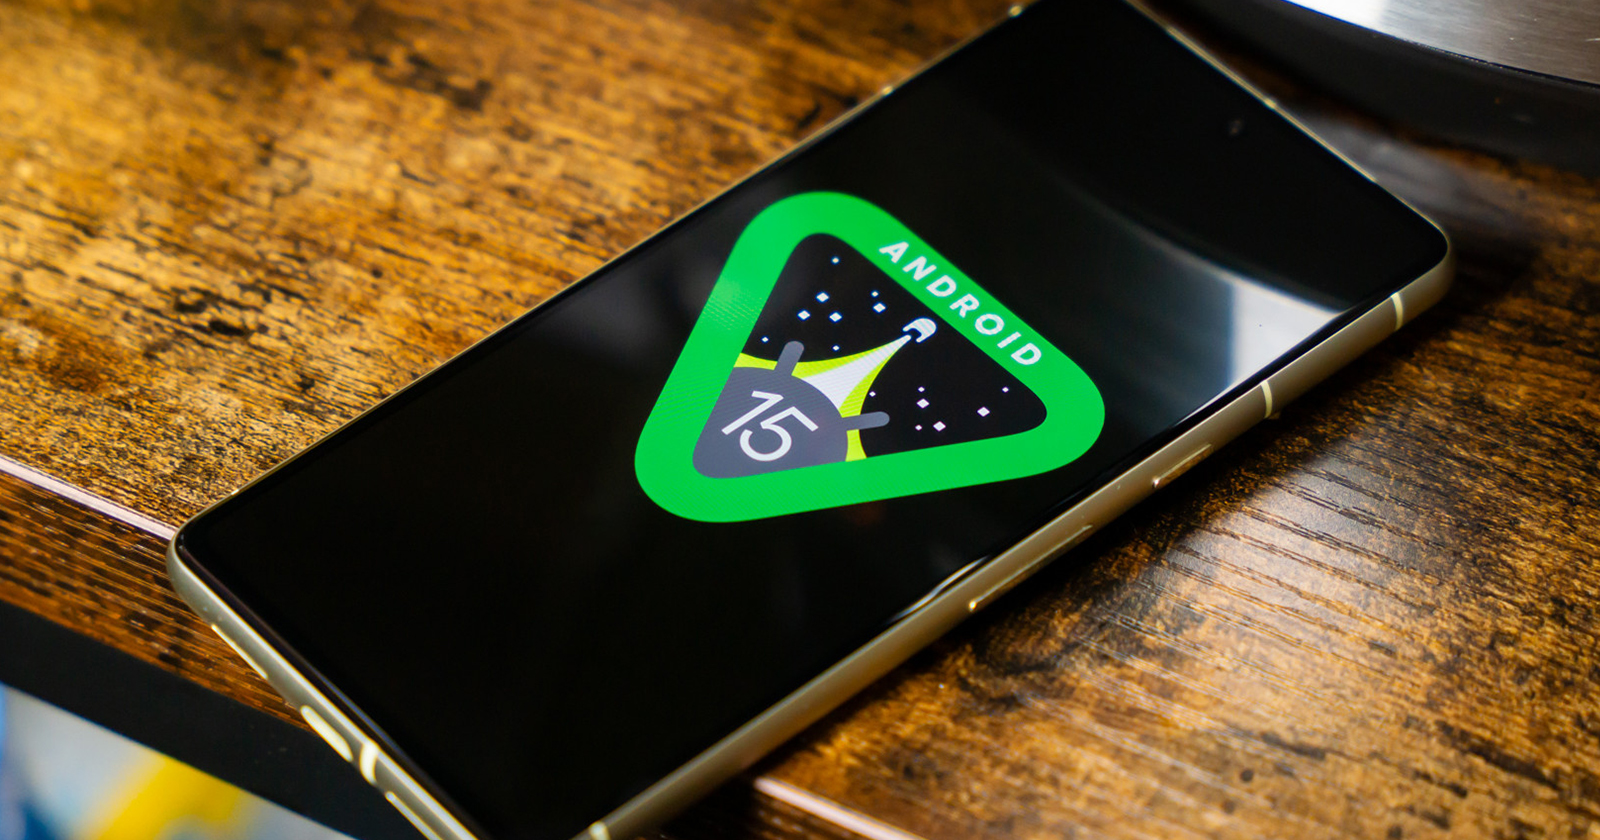 Android 15 ökar batteritiden i standby till 3 timmar